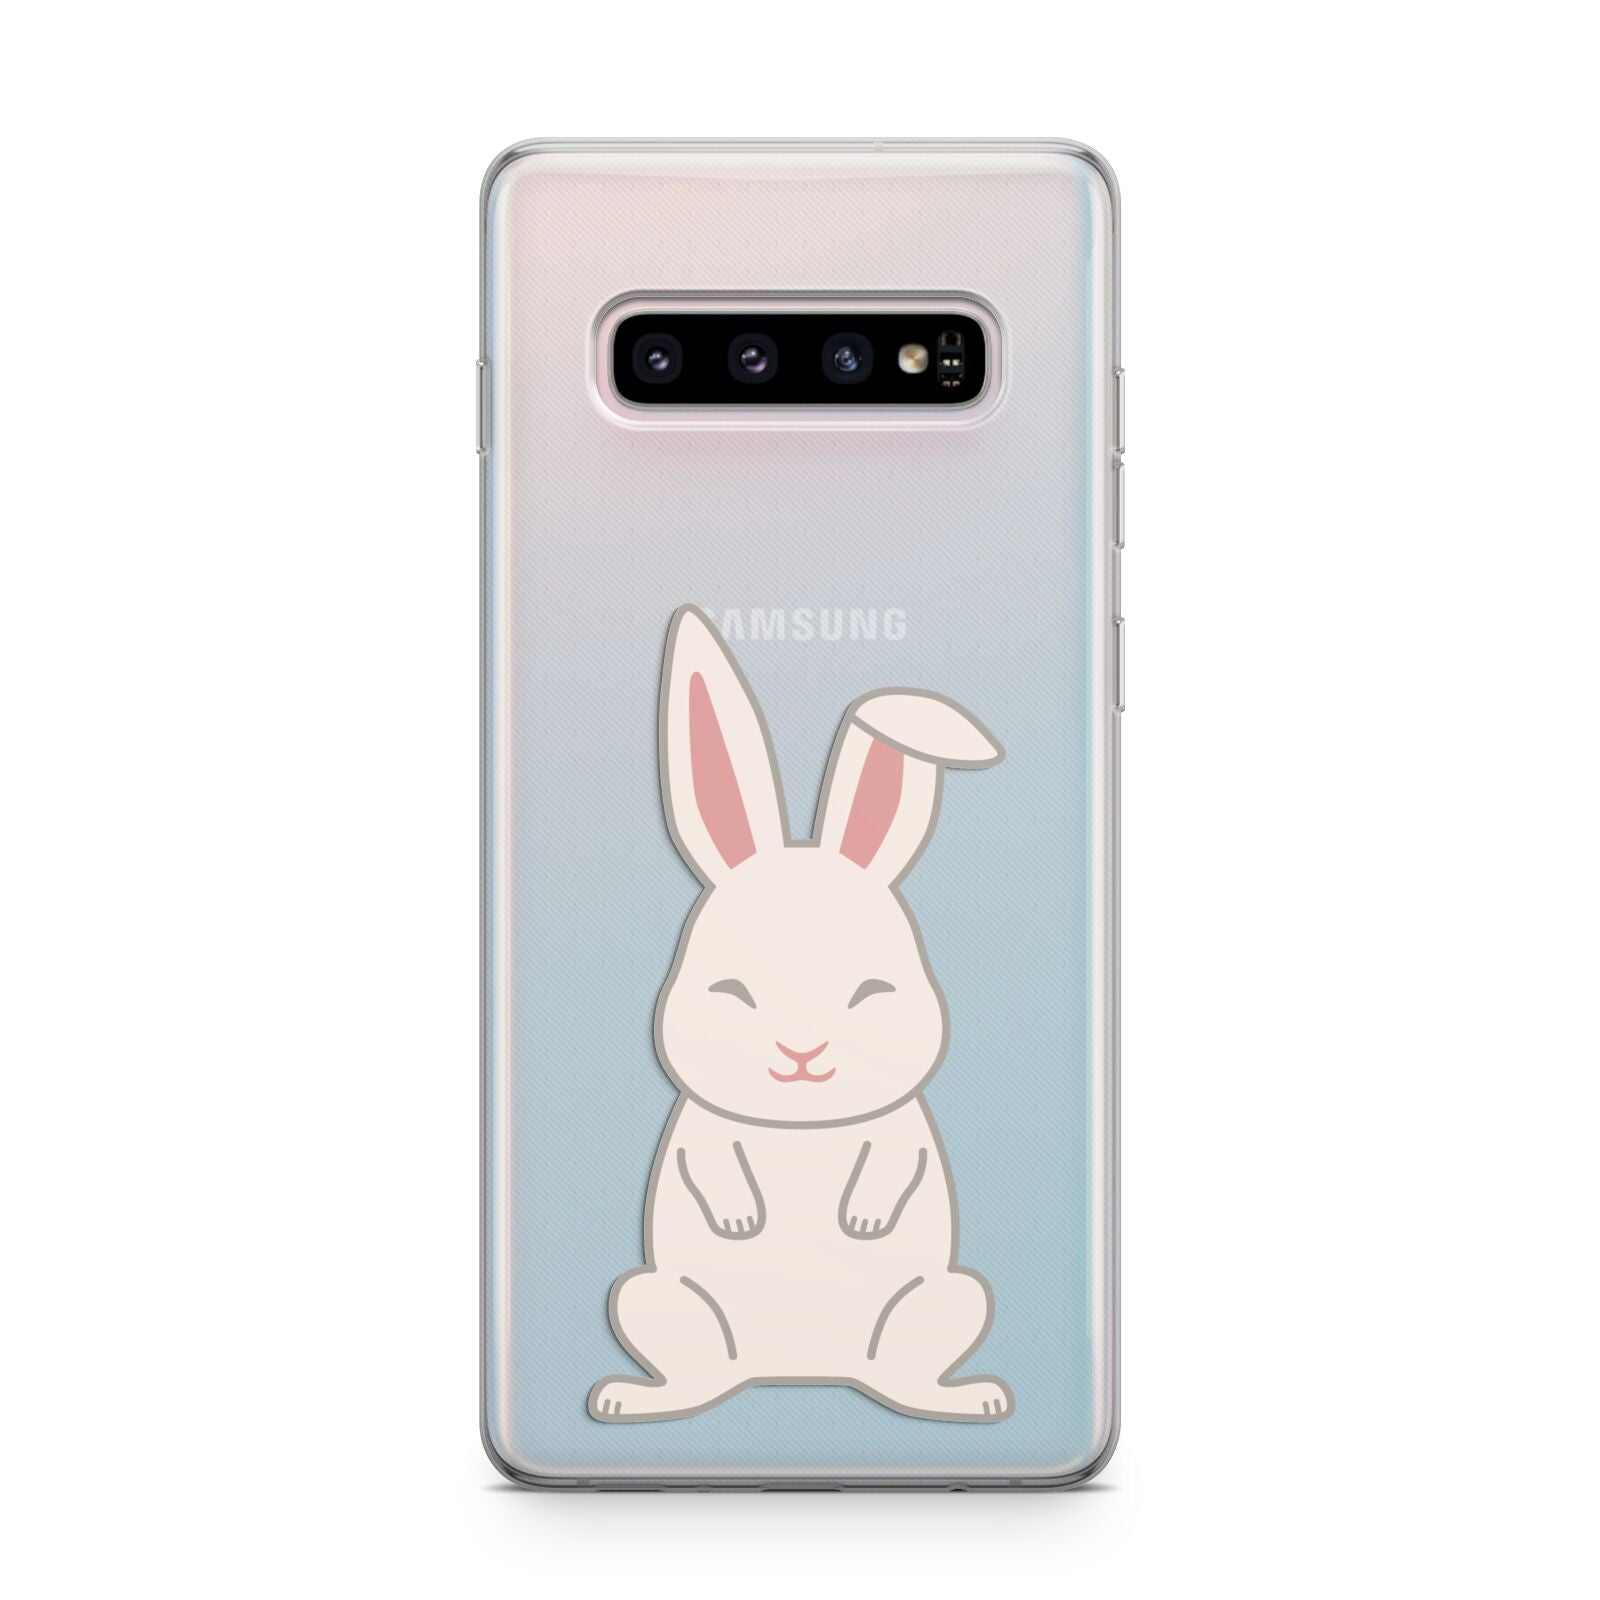 Bunny Samsung Galaxy S10 Plus Case